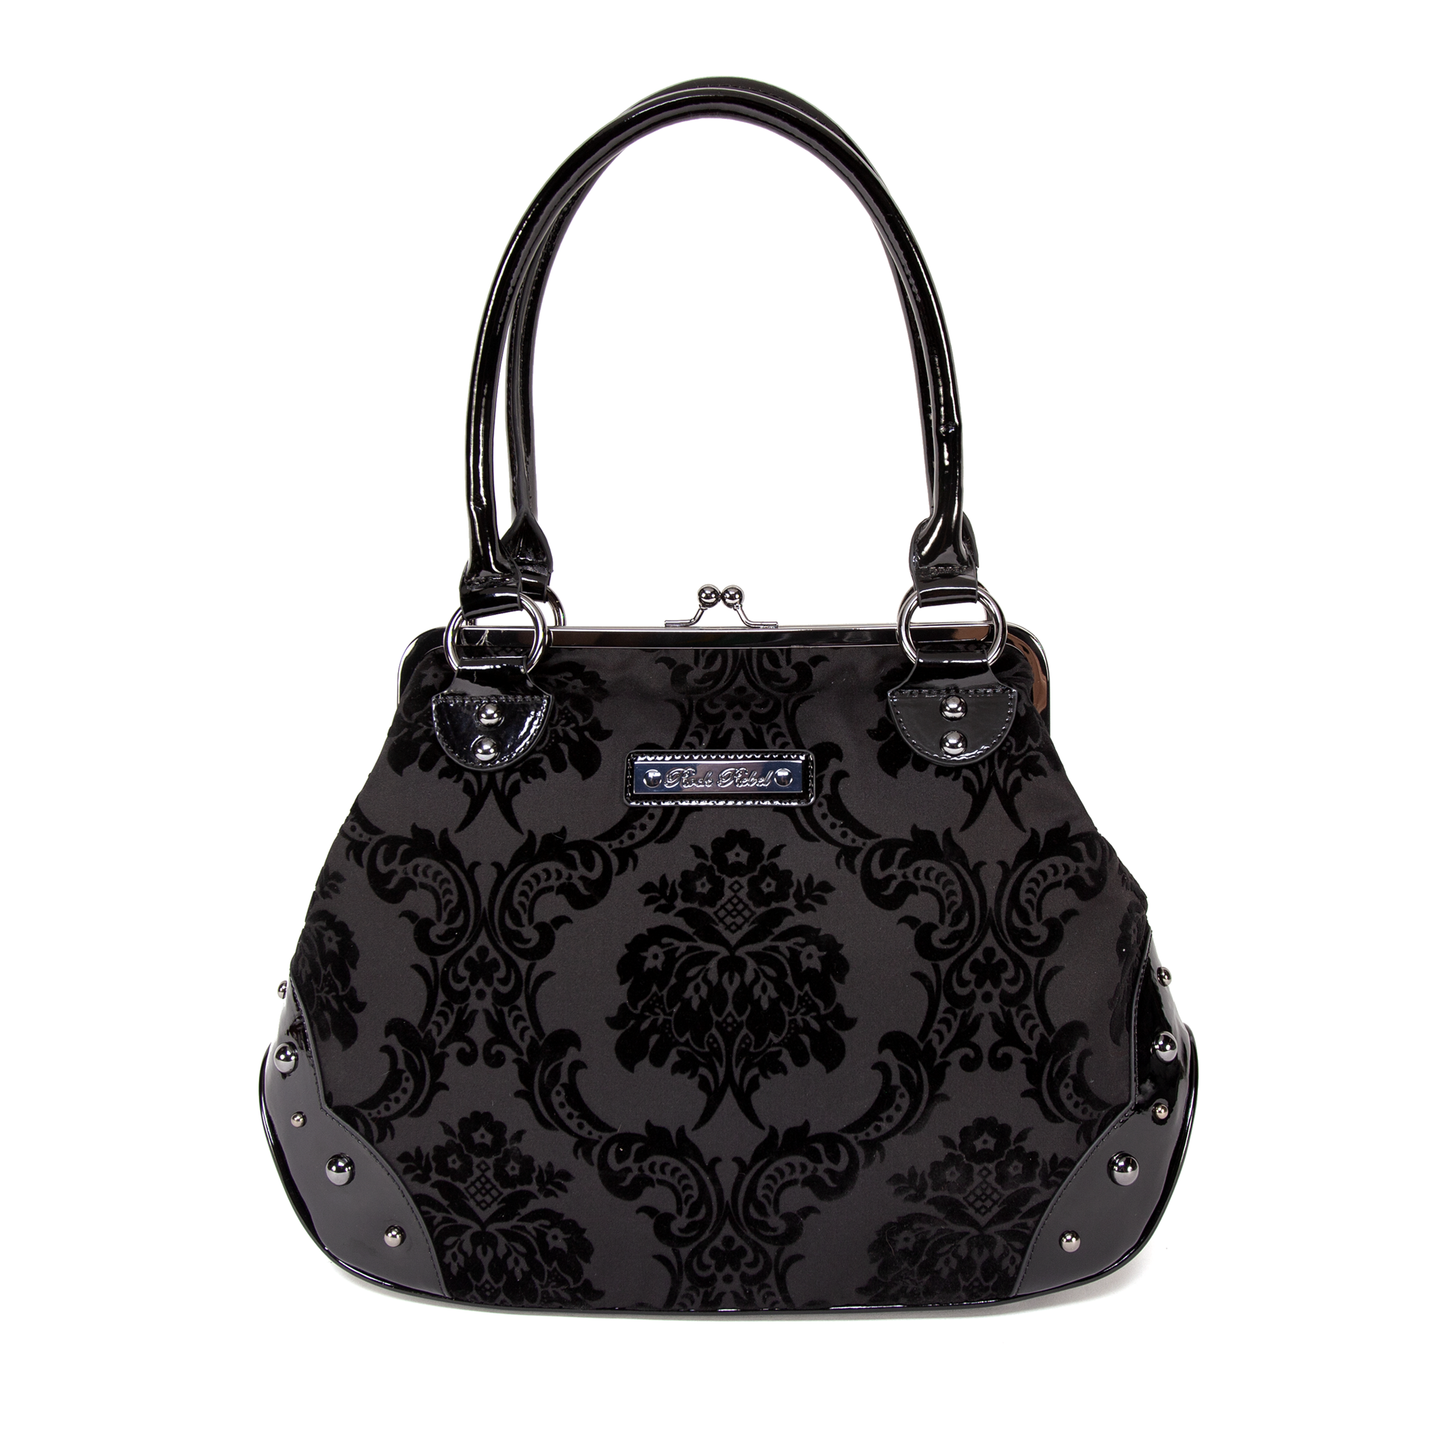 Mistress Kisslock Handbag in Black